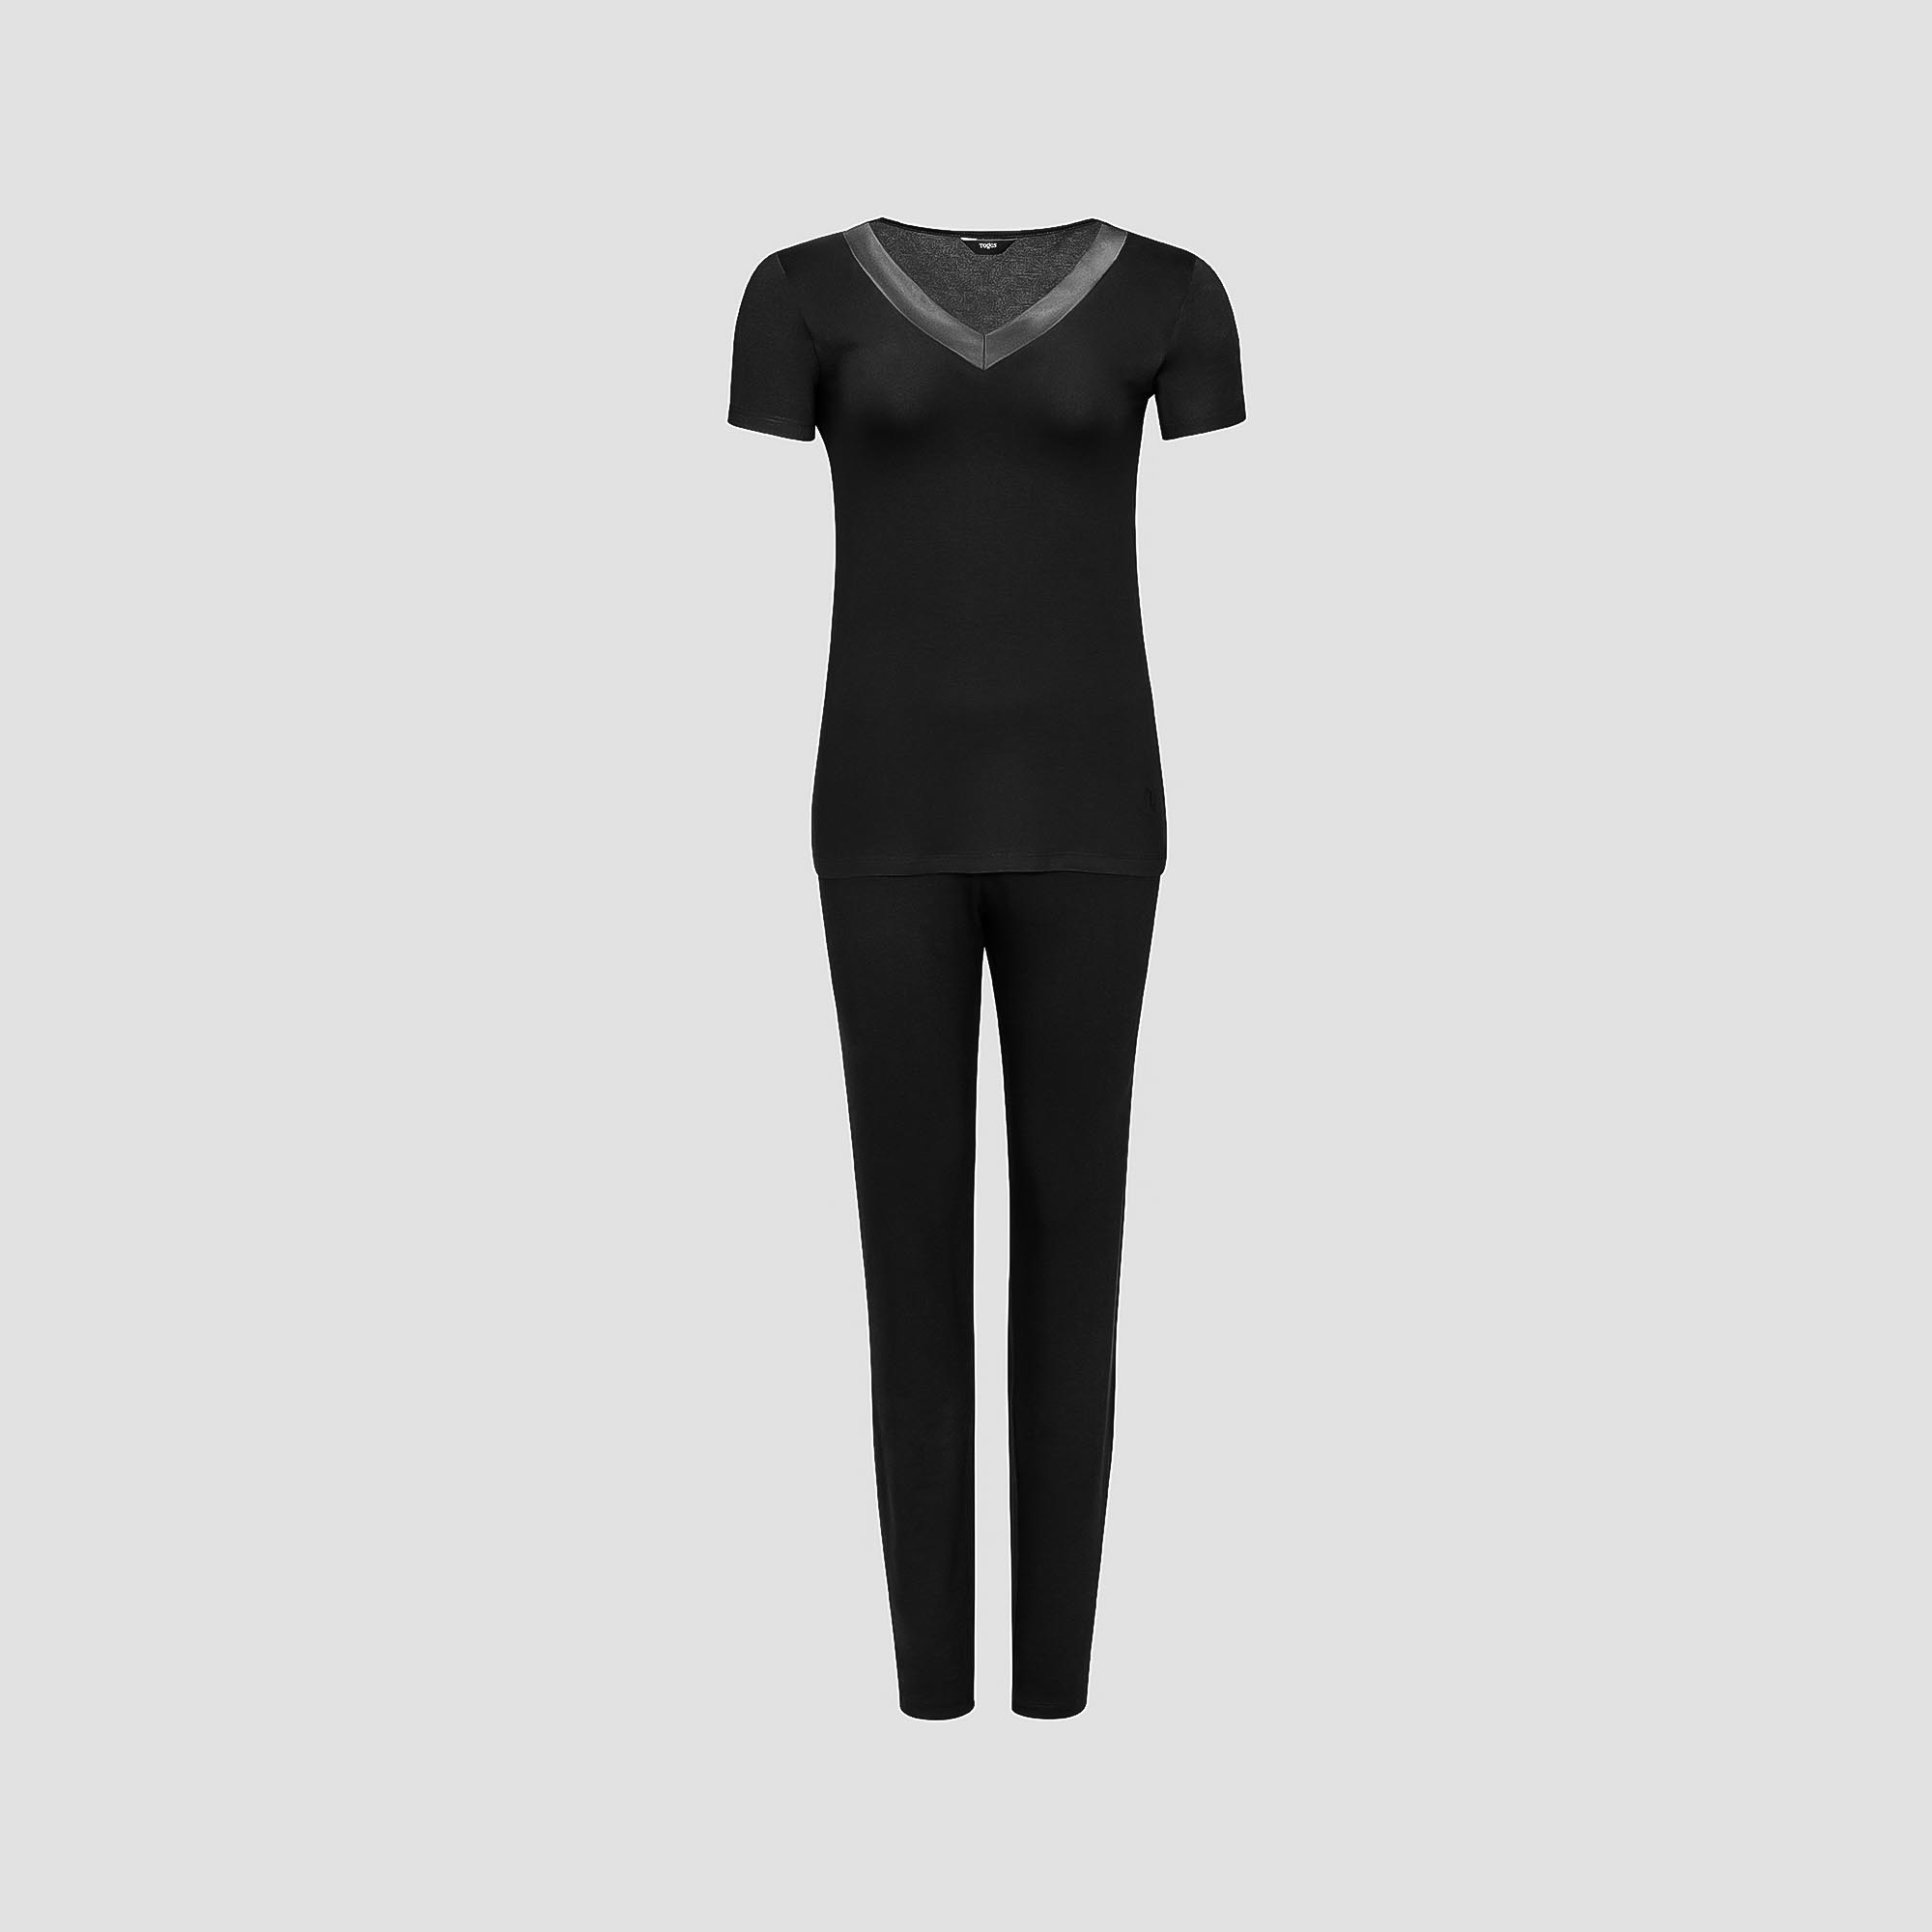 Пижама Togas Ингелла черная женская L(48) 2 предмета